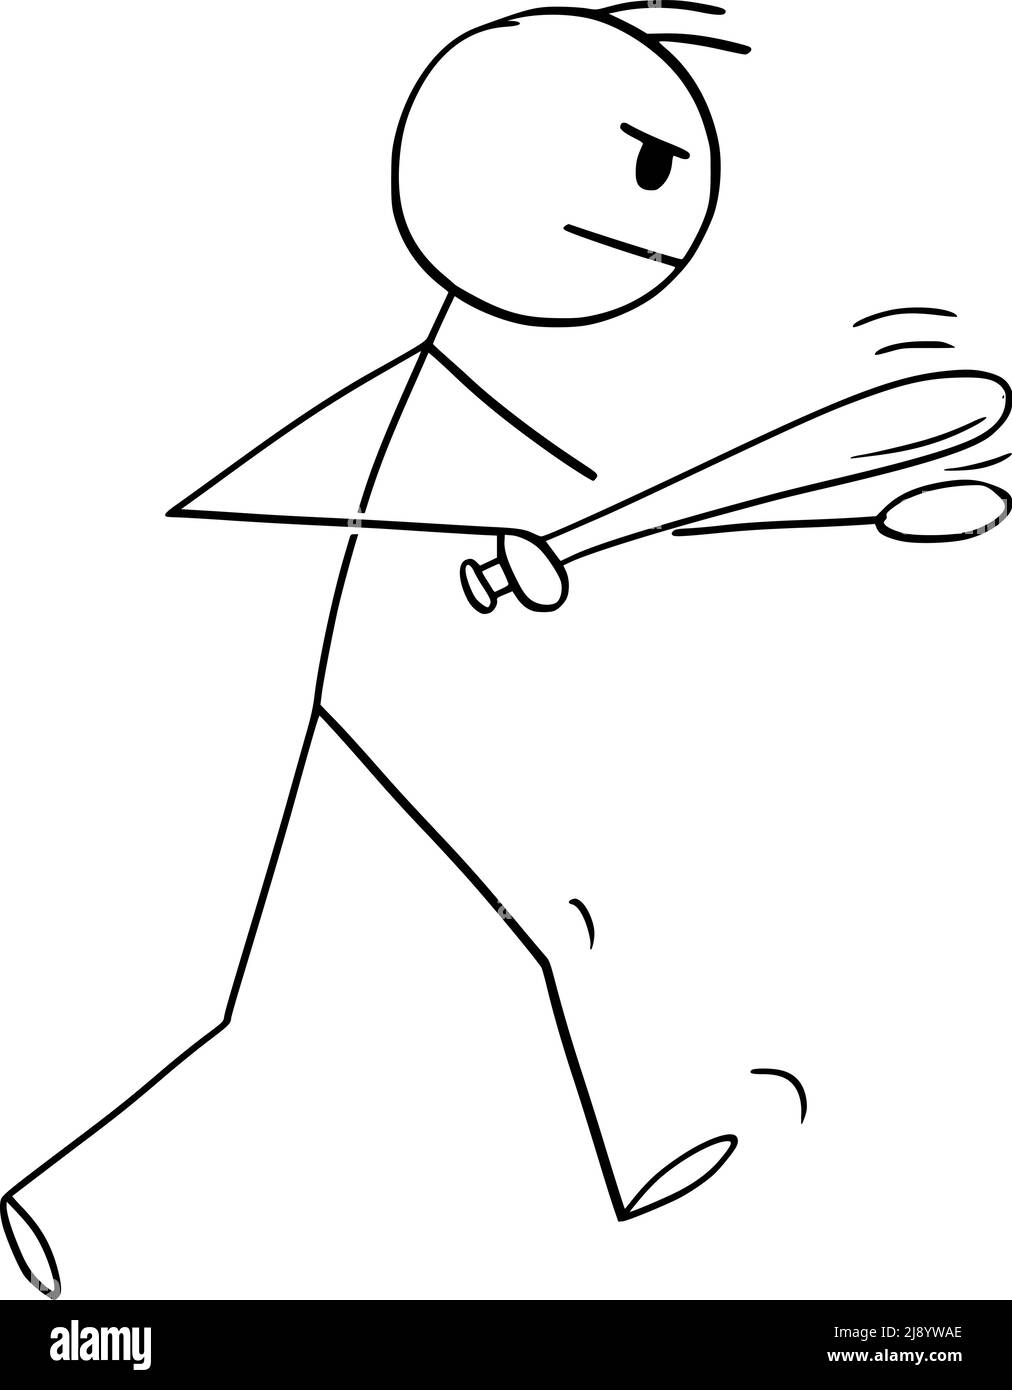 Persona agresiva con Baton o Bat va a luchar, Vector Cartoon Stick Ilustración de la figura Ilustración del Vector